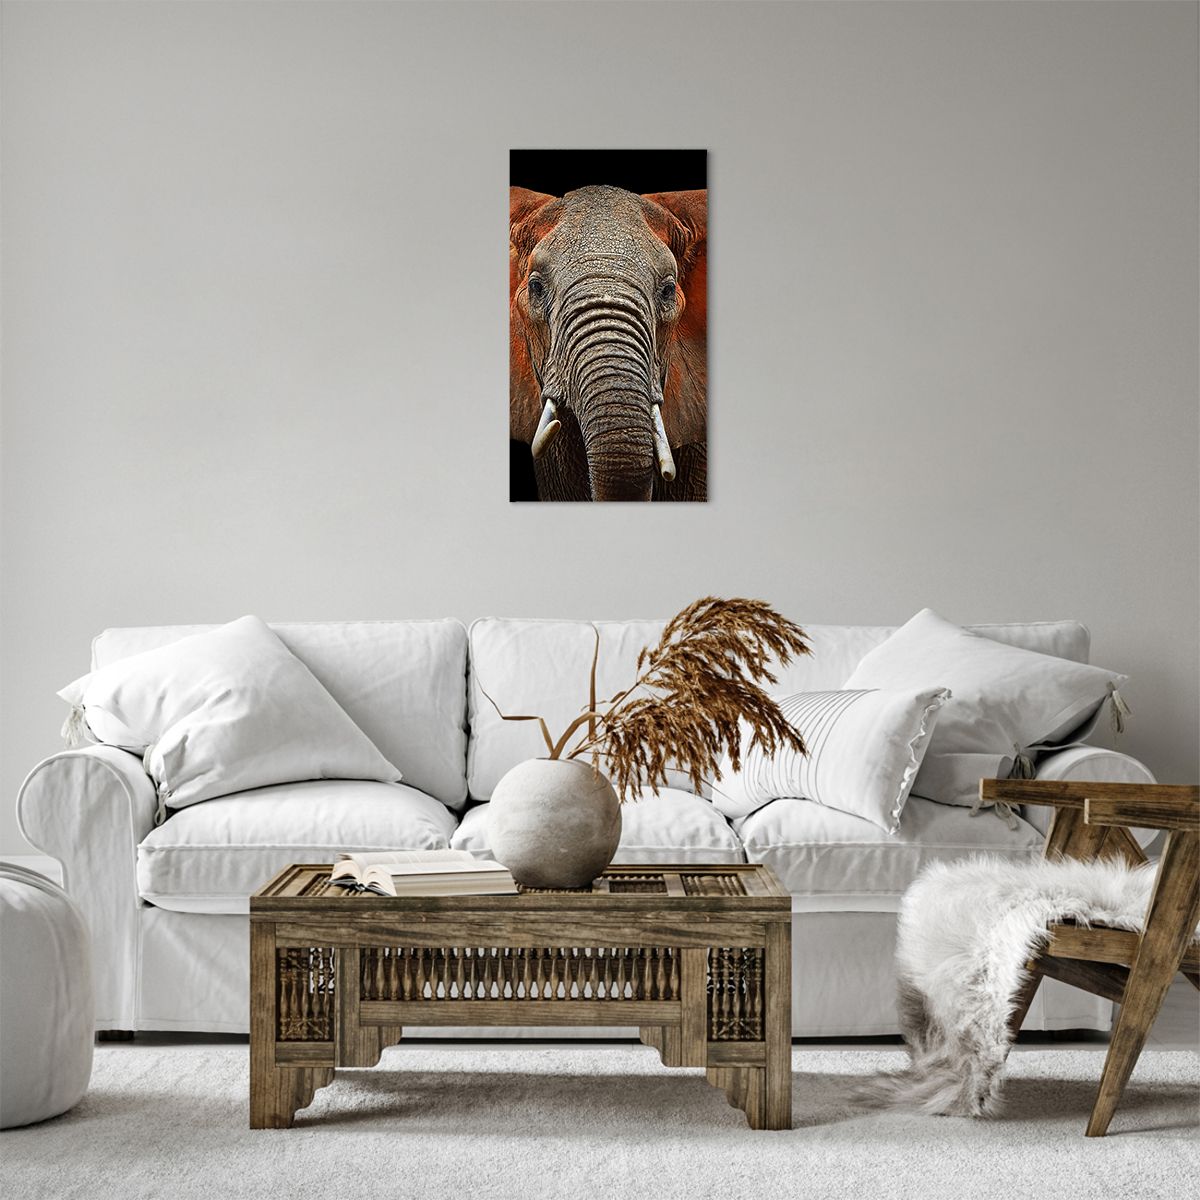 Obrazy na płótnie Słoń, Obrazy na płótnie Zwierzęta, Obrazy na płótnie Afryka, Obrazy na płótnie Natura, Obrazy na płótnie Safari